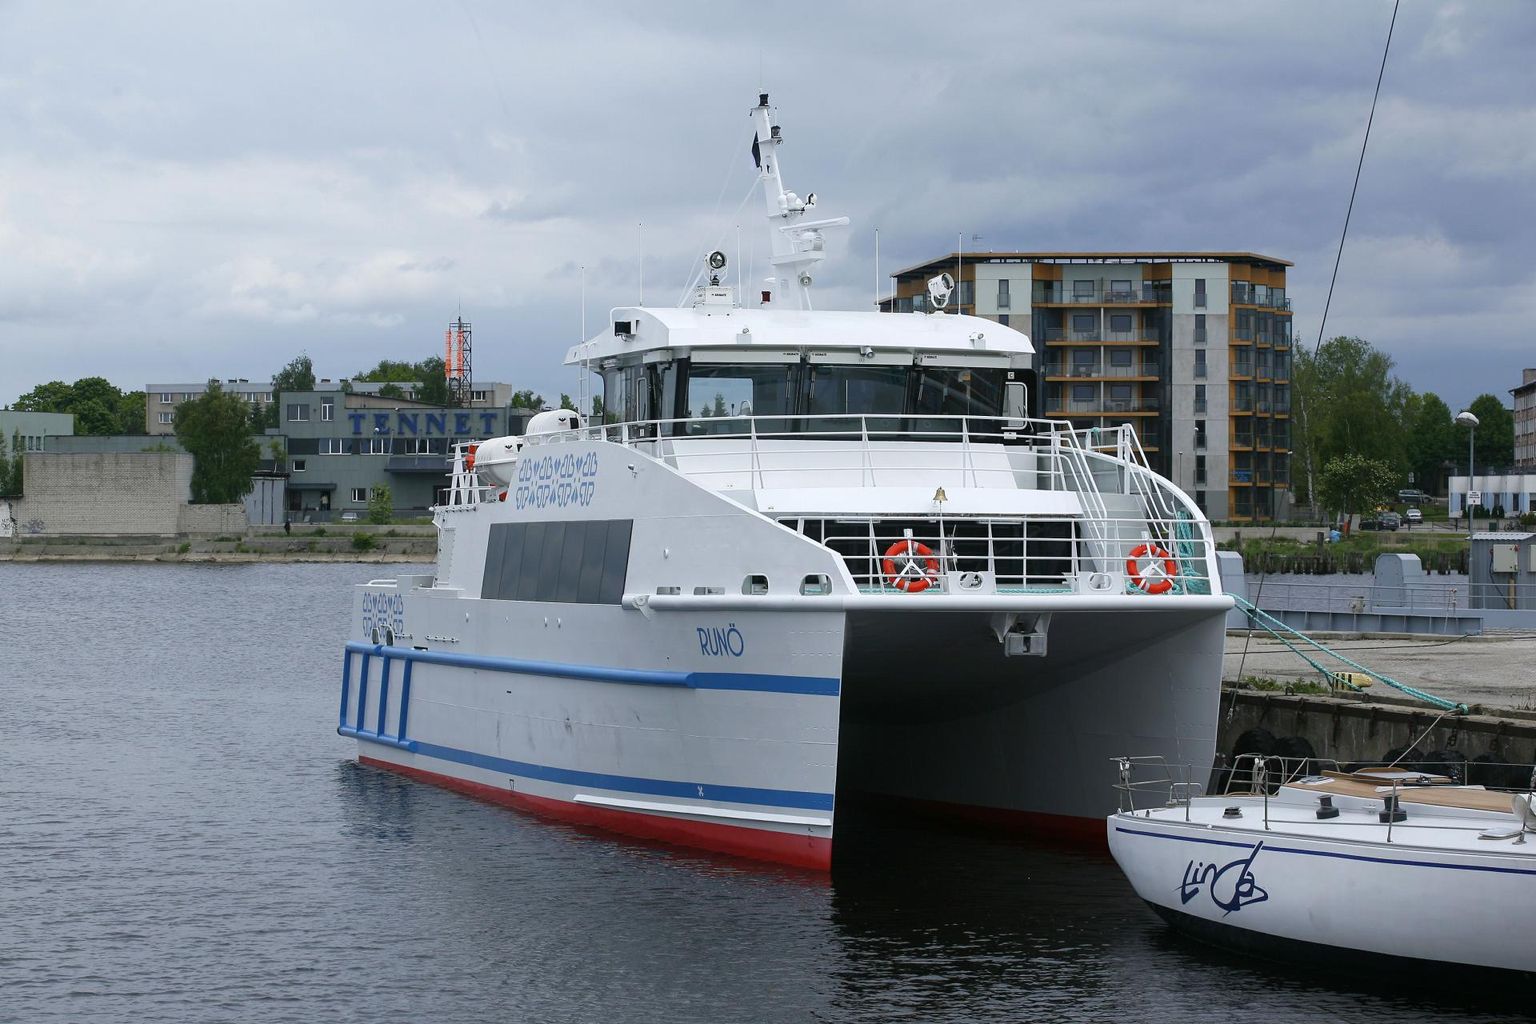 Kui kiirkatamaraan Runö 2012. aastal vette lasti, arvati ekslikult, et ruhnlaste ühendusprobleemid mandriga on murtud.